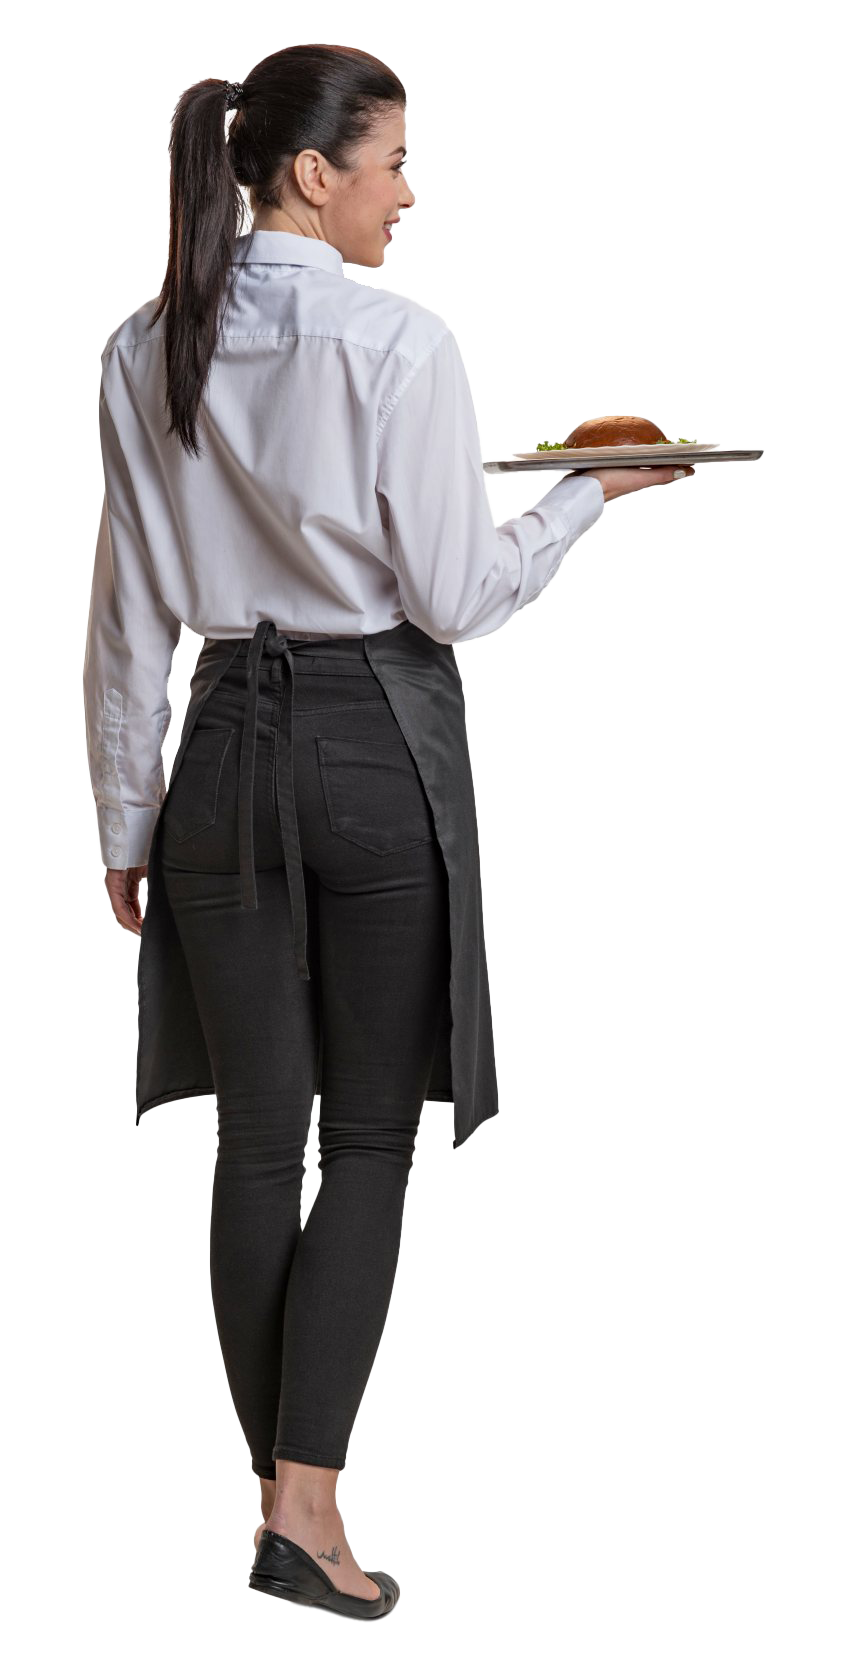 Female Waiter PNG Image